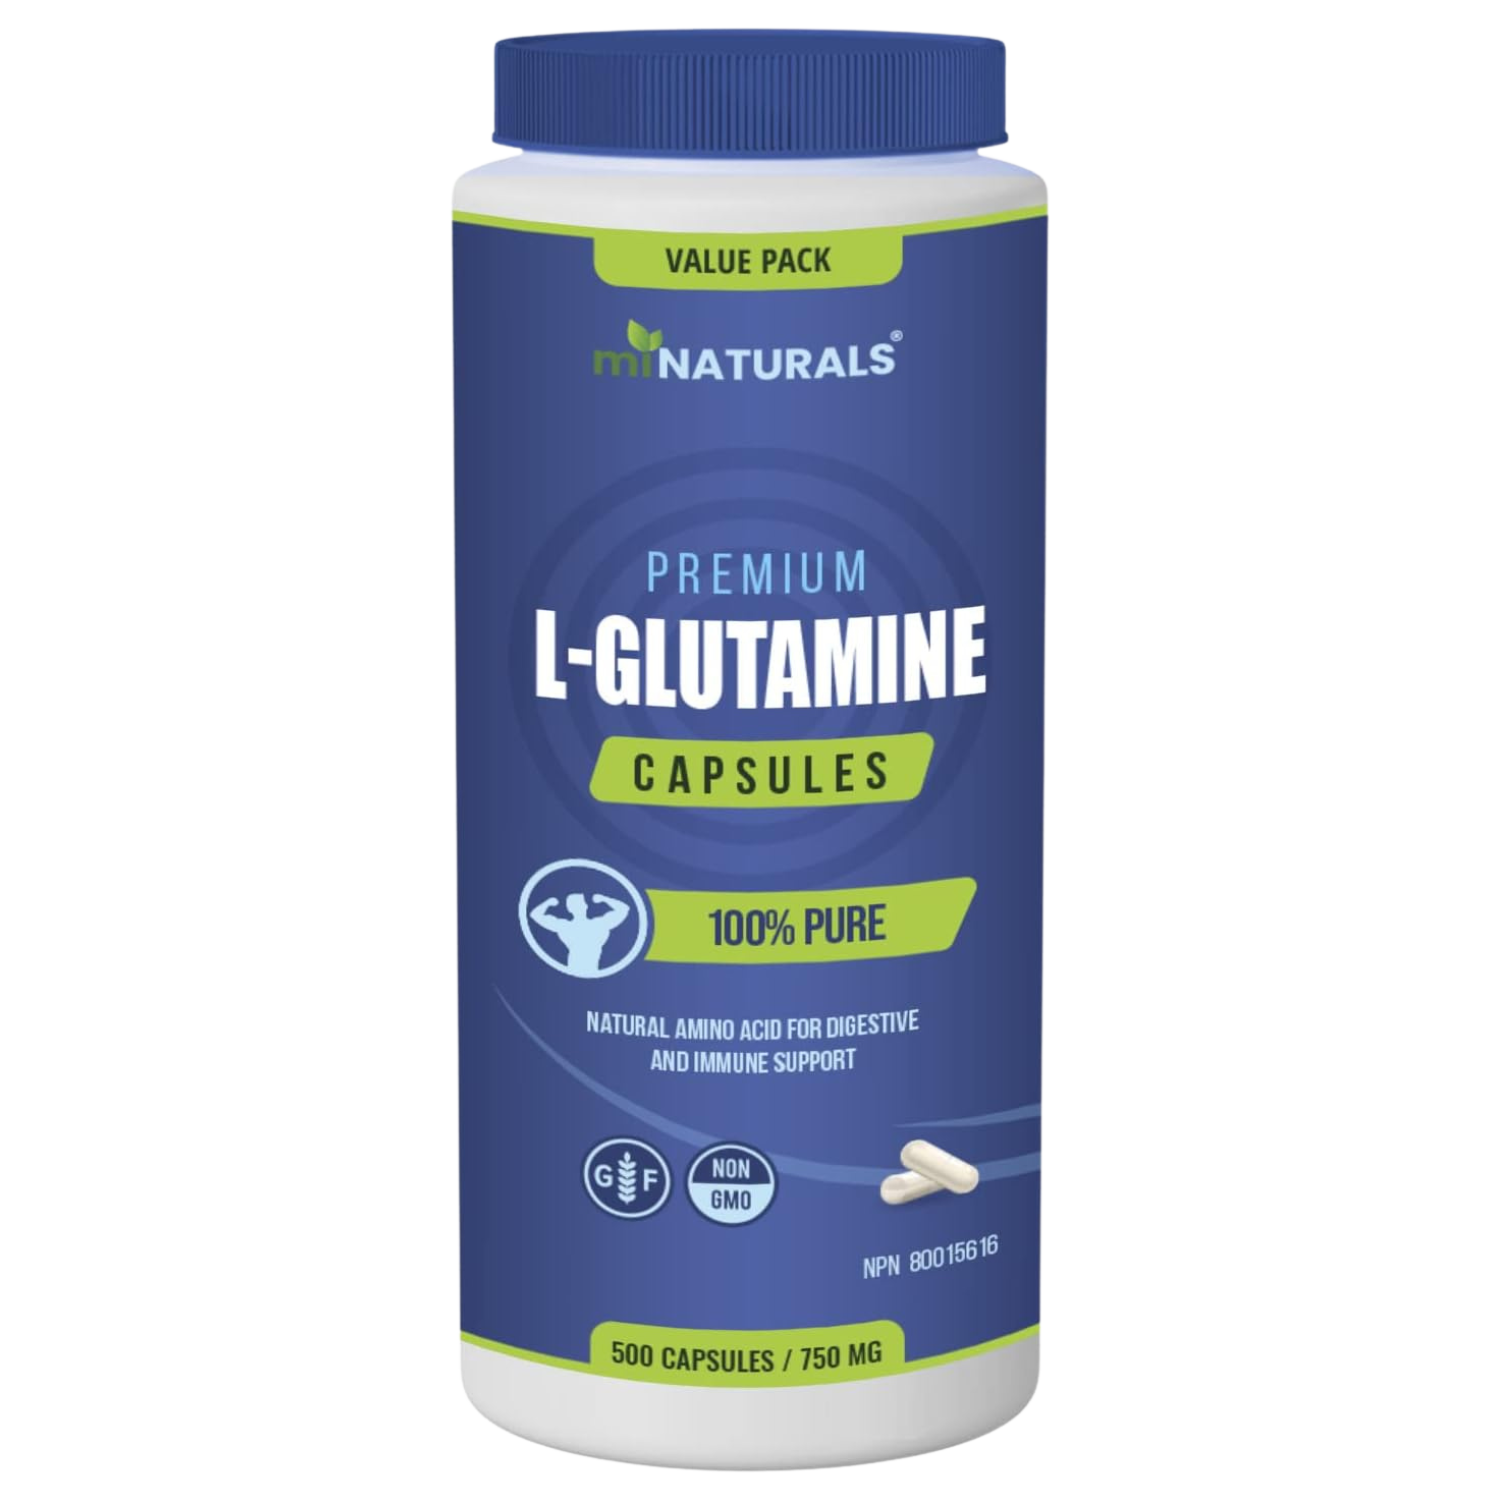 Capsules de L-Glutamine - 500 Capsules - PACK ÉCONOMIQUE